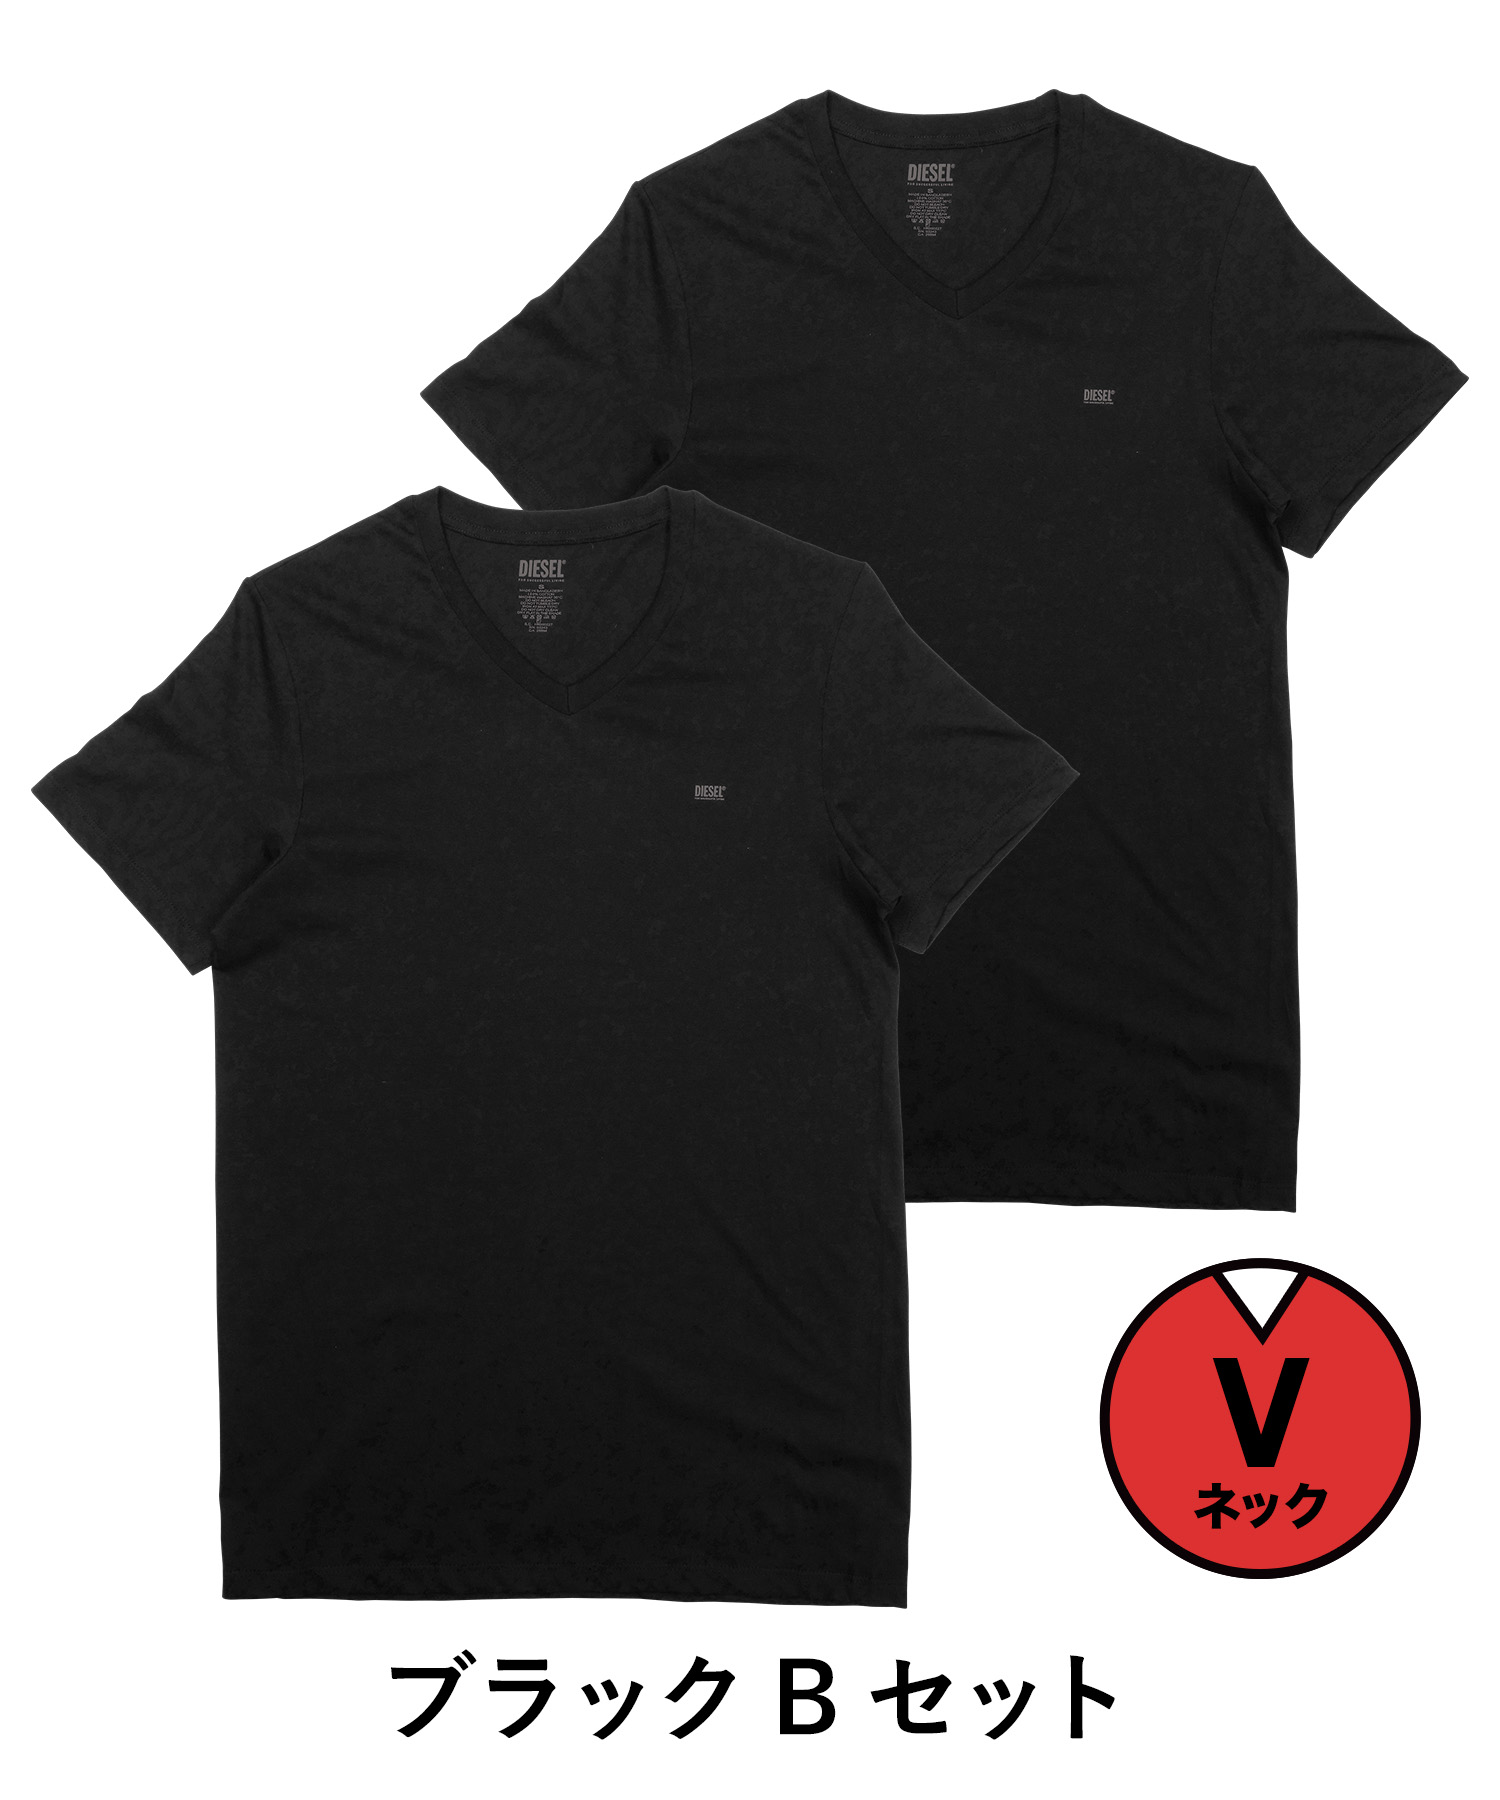 Tシャツ メンズ ディーゼル DIESEL ロゴ ワンポイント シャツ 3枚セット かっこいい セット 半袖 綿 コットン ブランド 大きい サイズ  Vネック 春 服